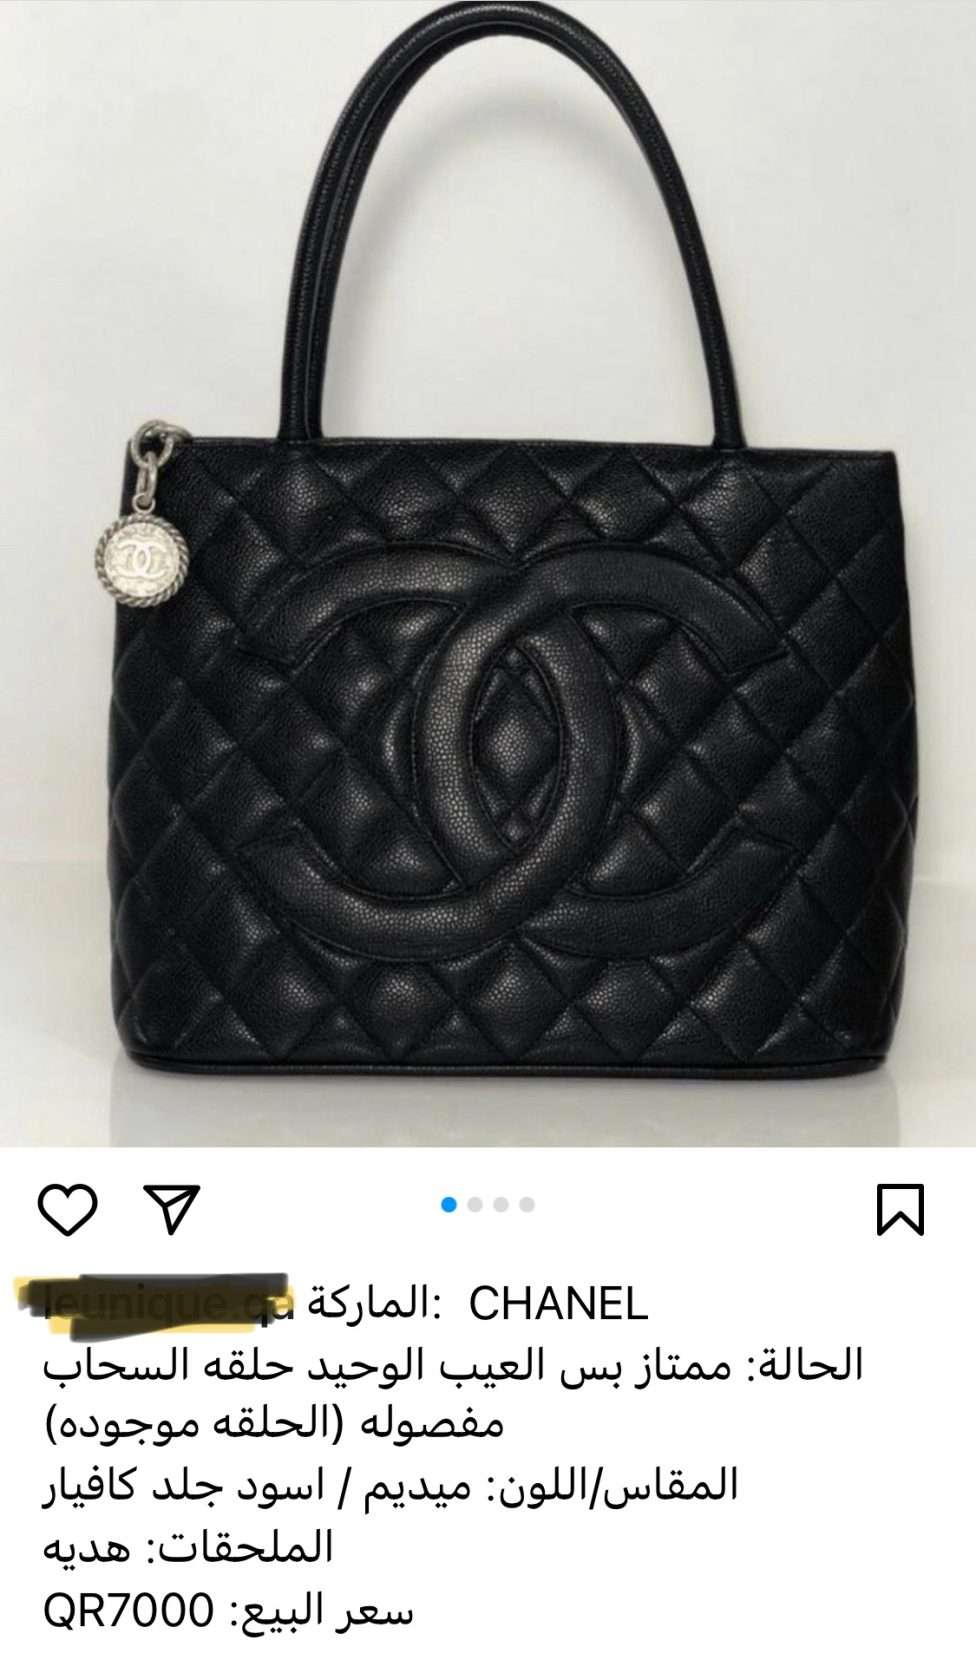 CHANEL original bag for sale